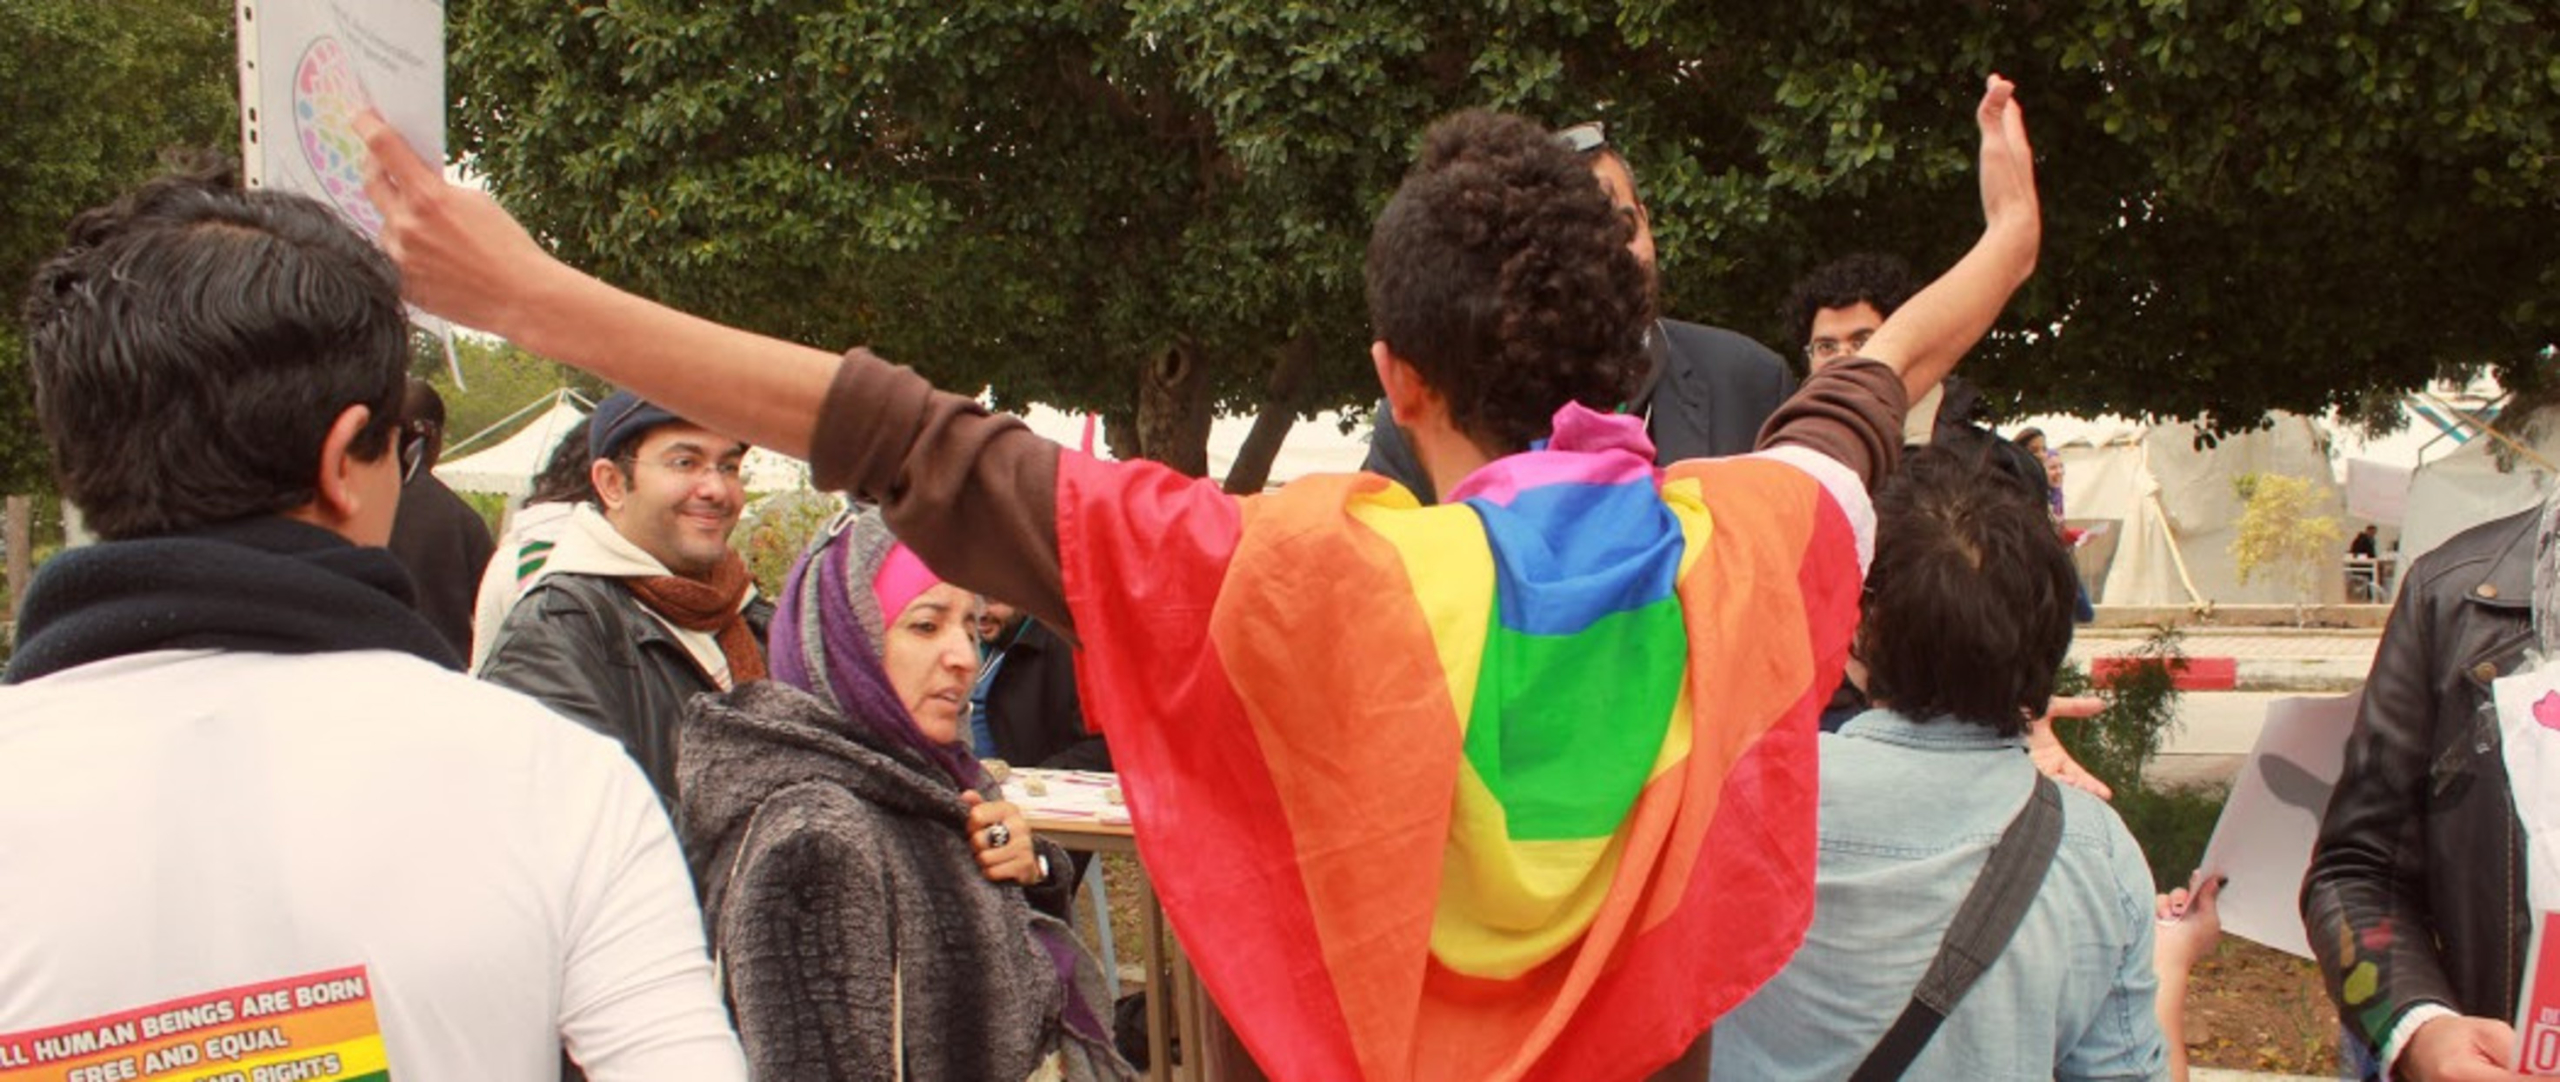 مصر مشروع قانون يجرِّم العلاقات المثلية وسط حملة قمعية غير مسبوقة ضد مجتمع الميم 8290